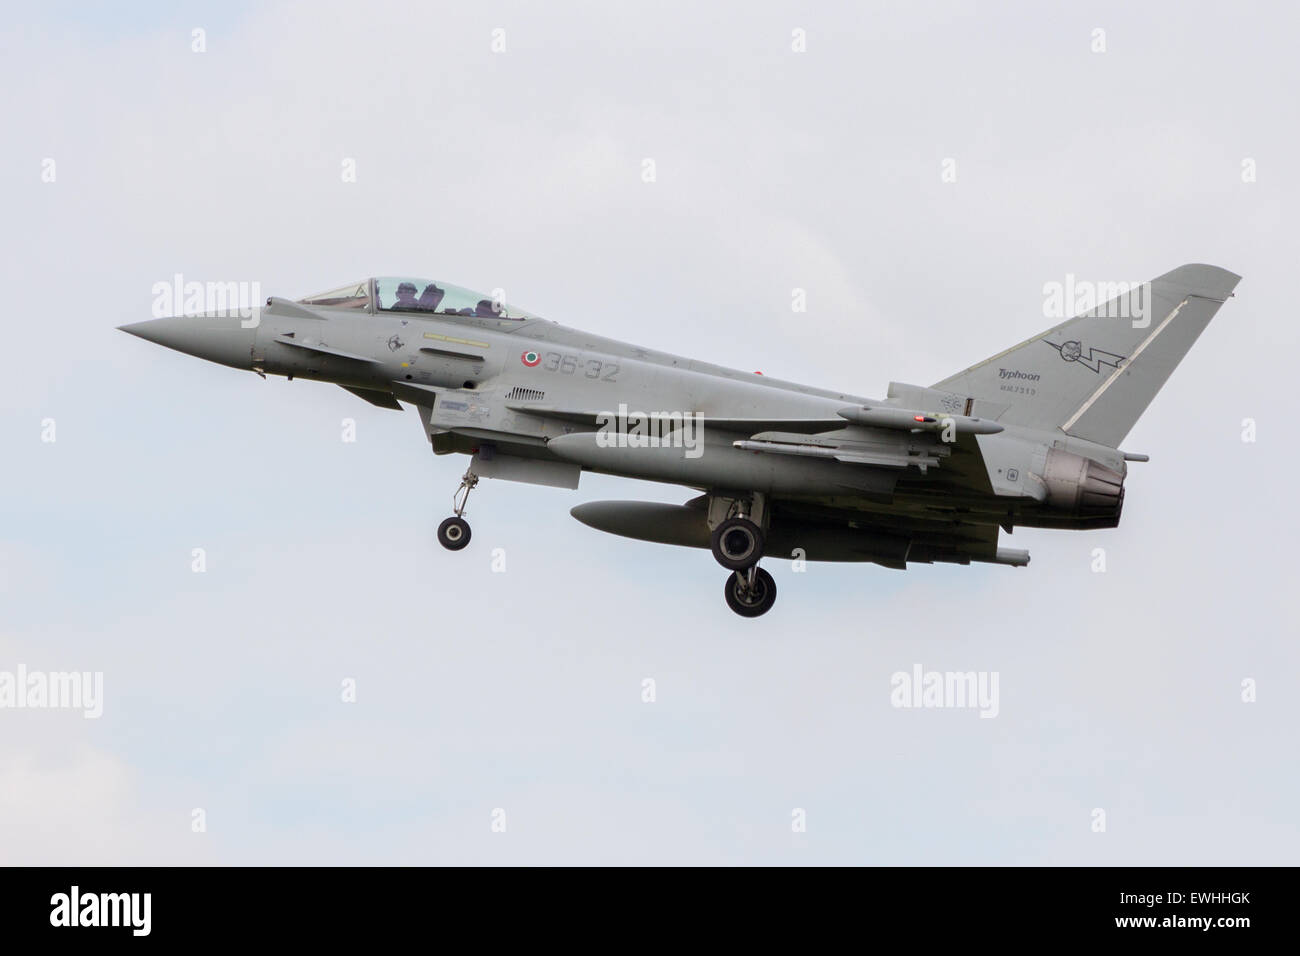 VOLKEL, Niederlande - SEP 25: Eine italienische Luftwaffe Eurofighter Typhoon Landung auf Volkel Airbase am Sep 25, 2014 in Volkel, Neth Stockfoto